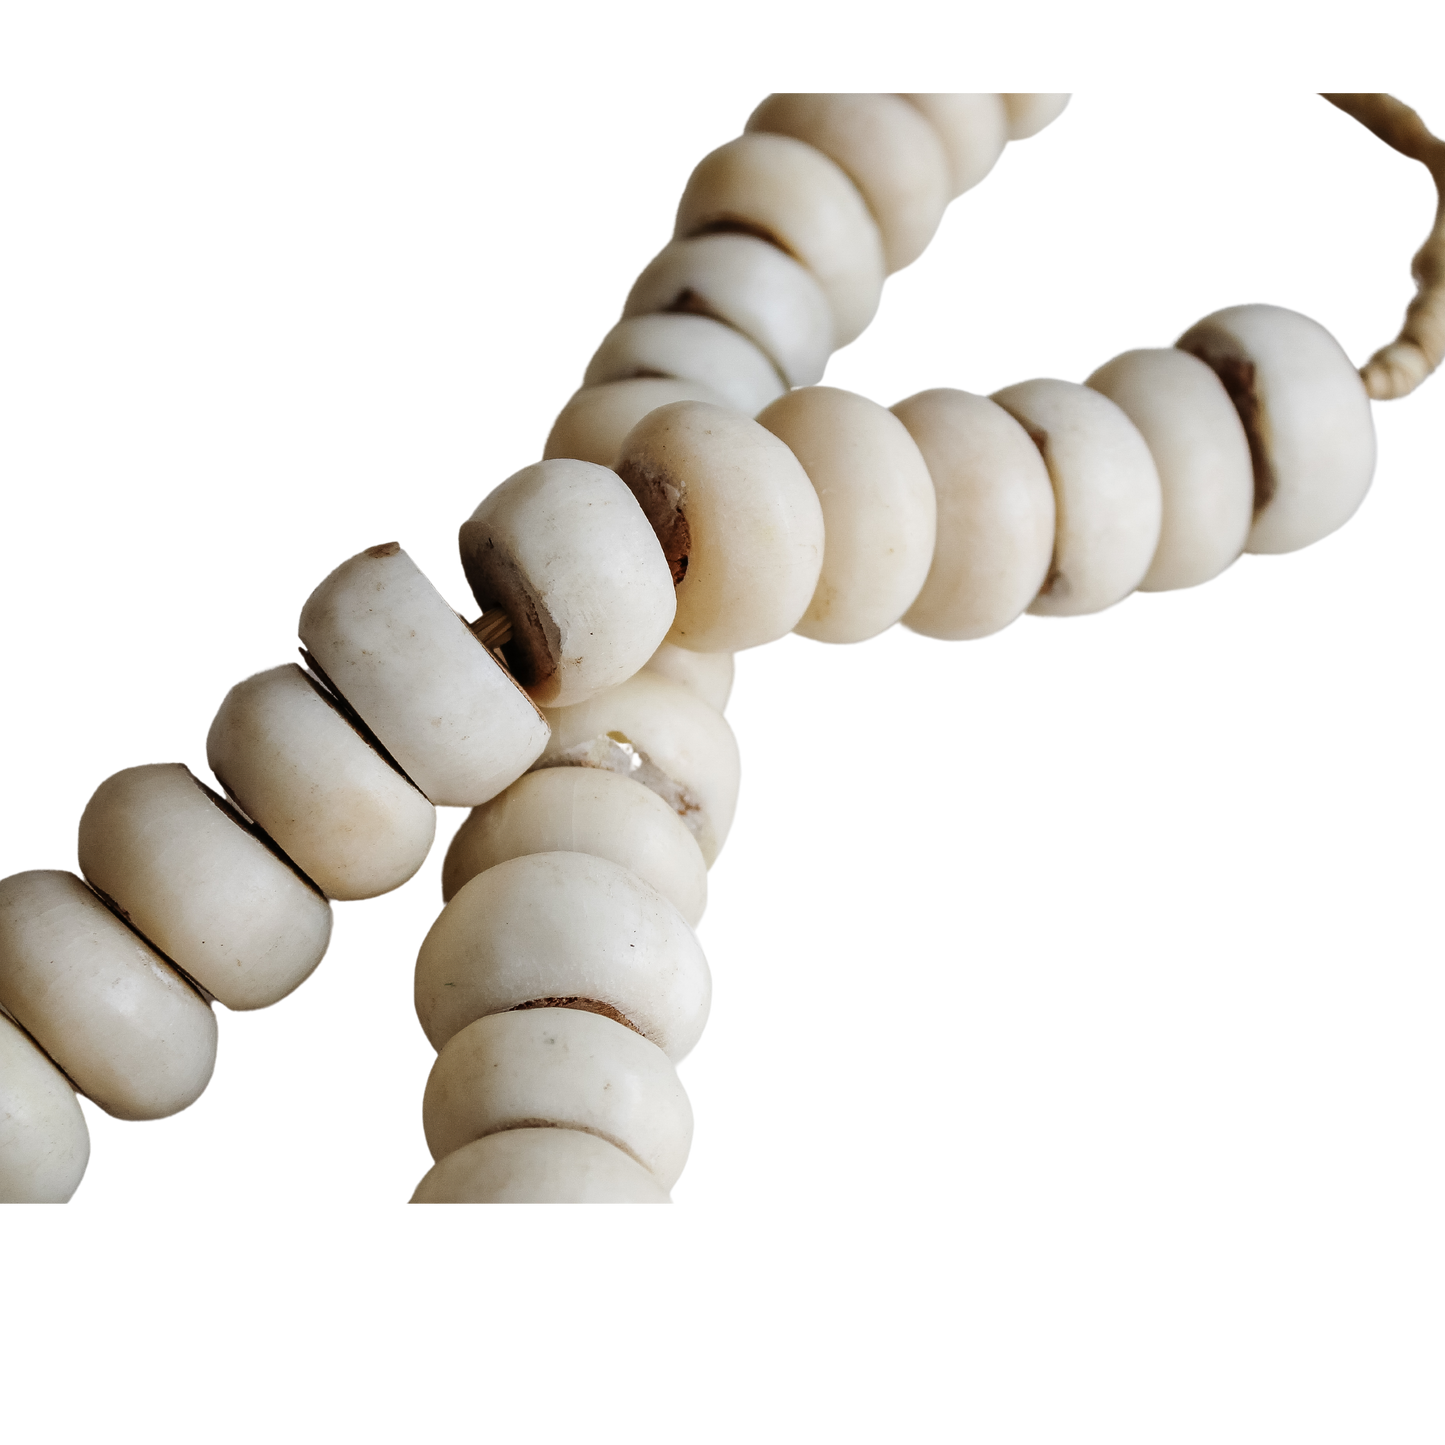 White Round Beads